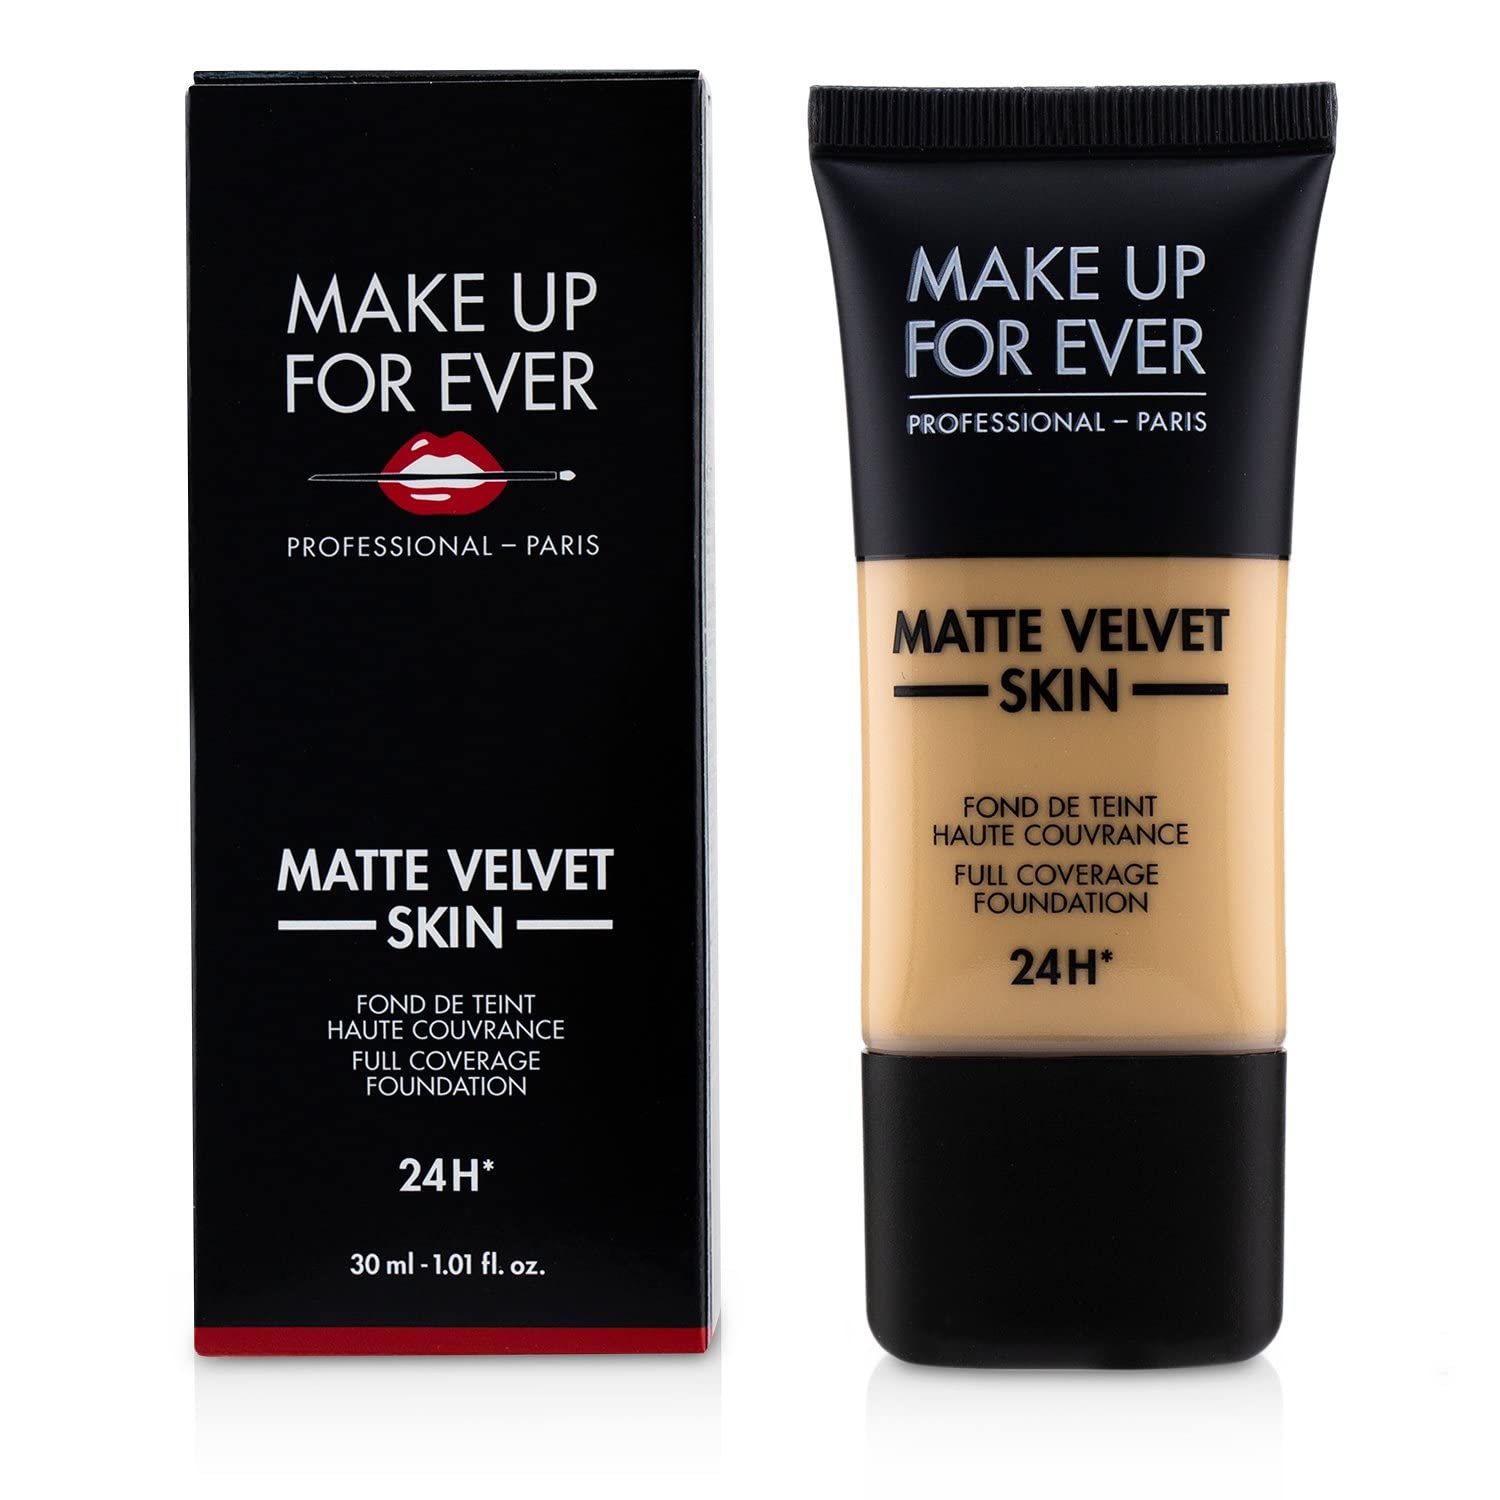 MAKE UP FOR EVER Matte Velvet Skin Full Coverage Foundation Y245 - SOFT SAND 1.01 oz/ 30 mL